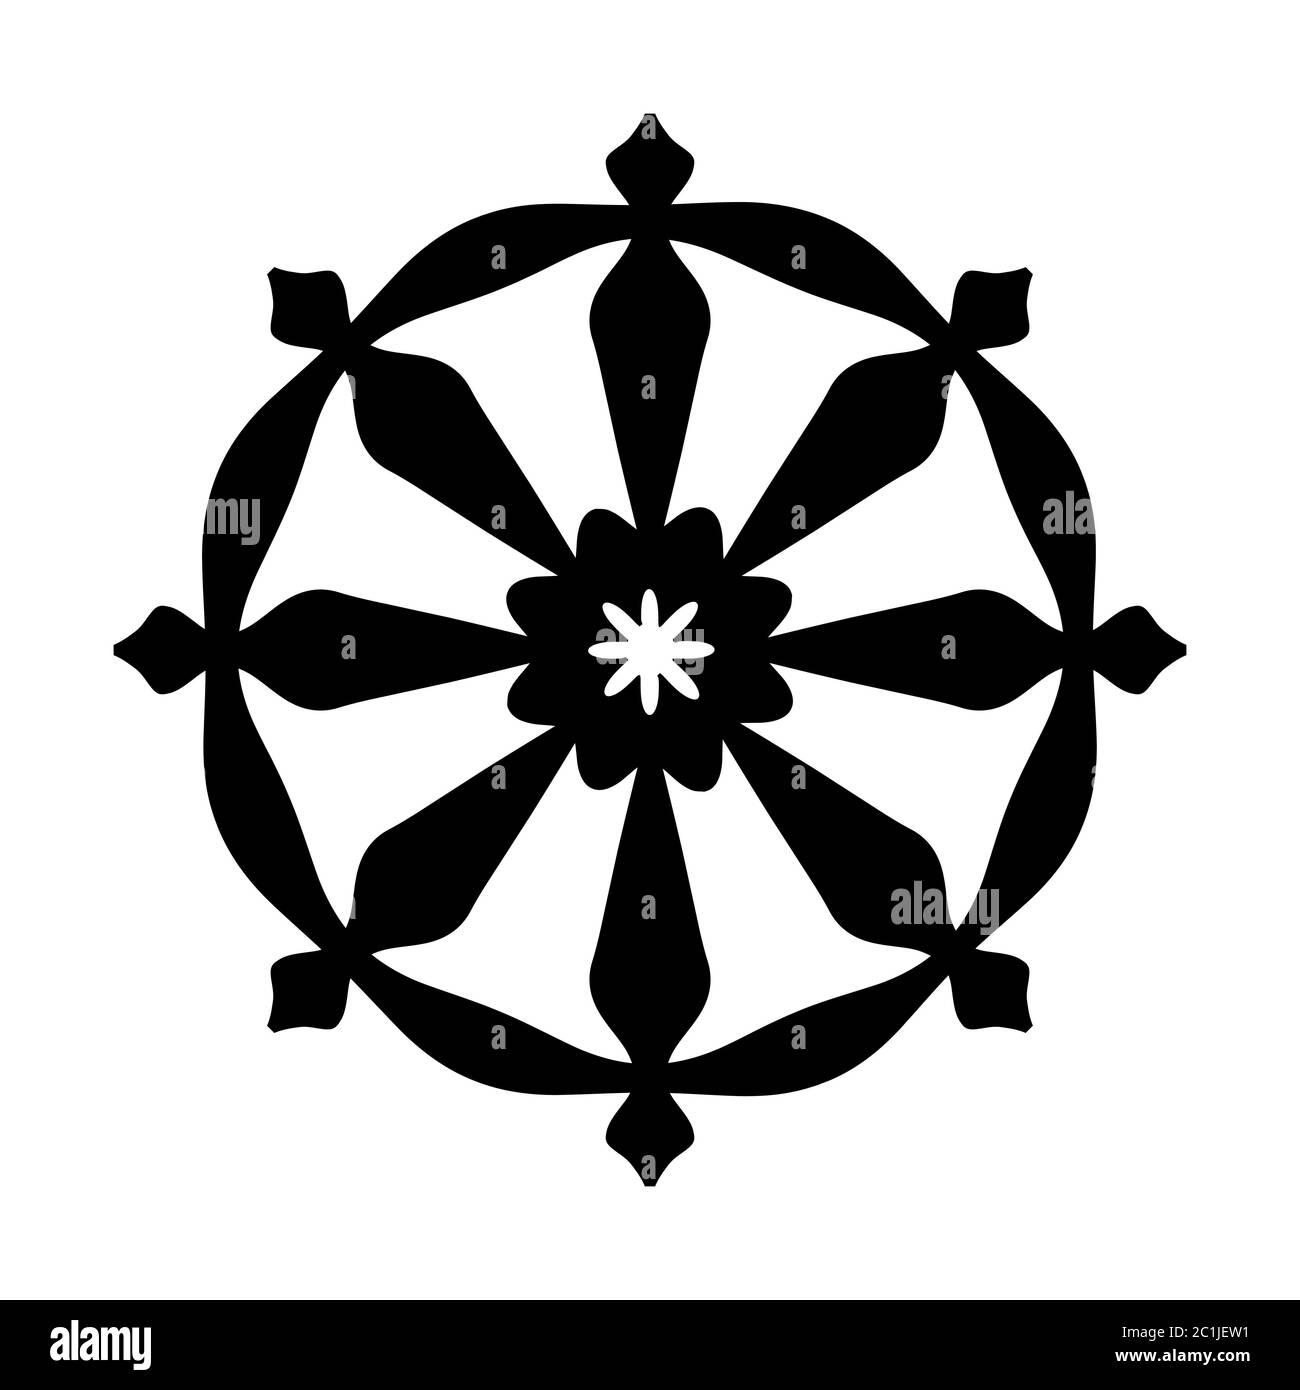 Ruota di Samsara - simbolo della Reincarnazione, il ciclo della morte e della rinascita (segno sacrale di tutte le religioni indiane). Foto Stock